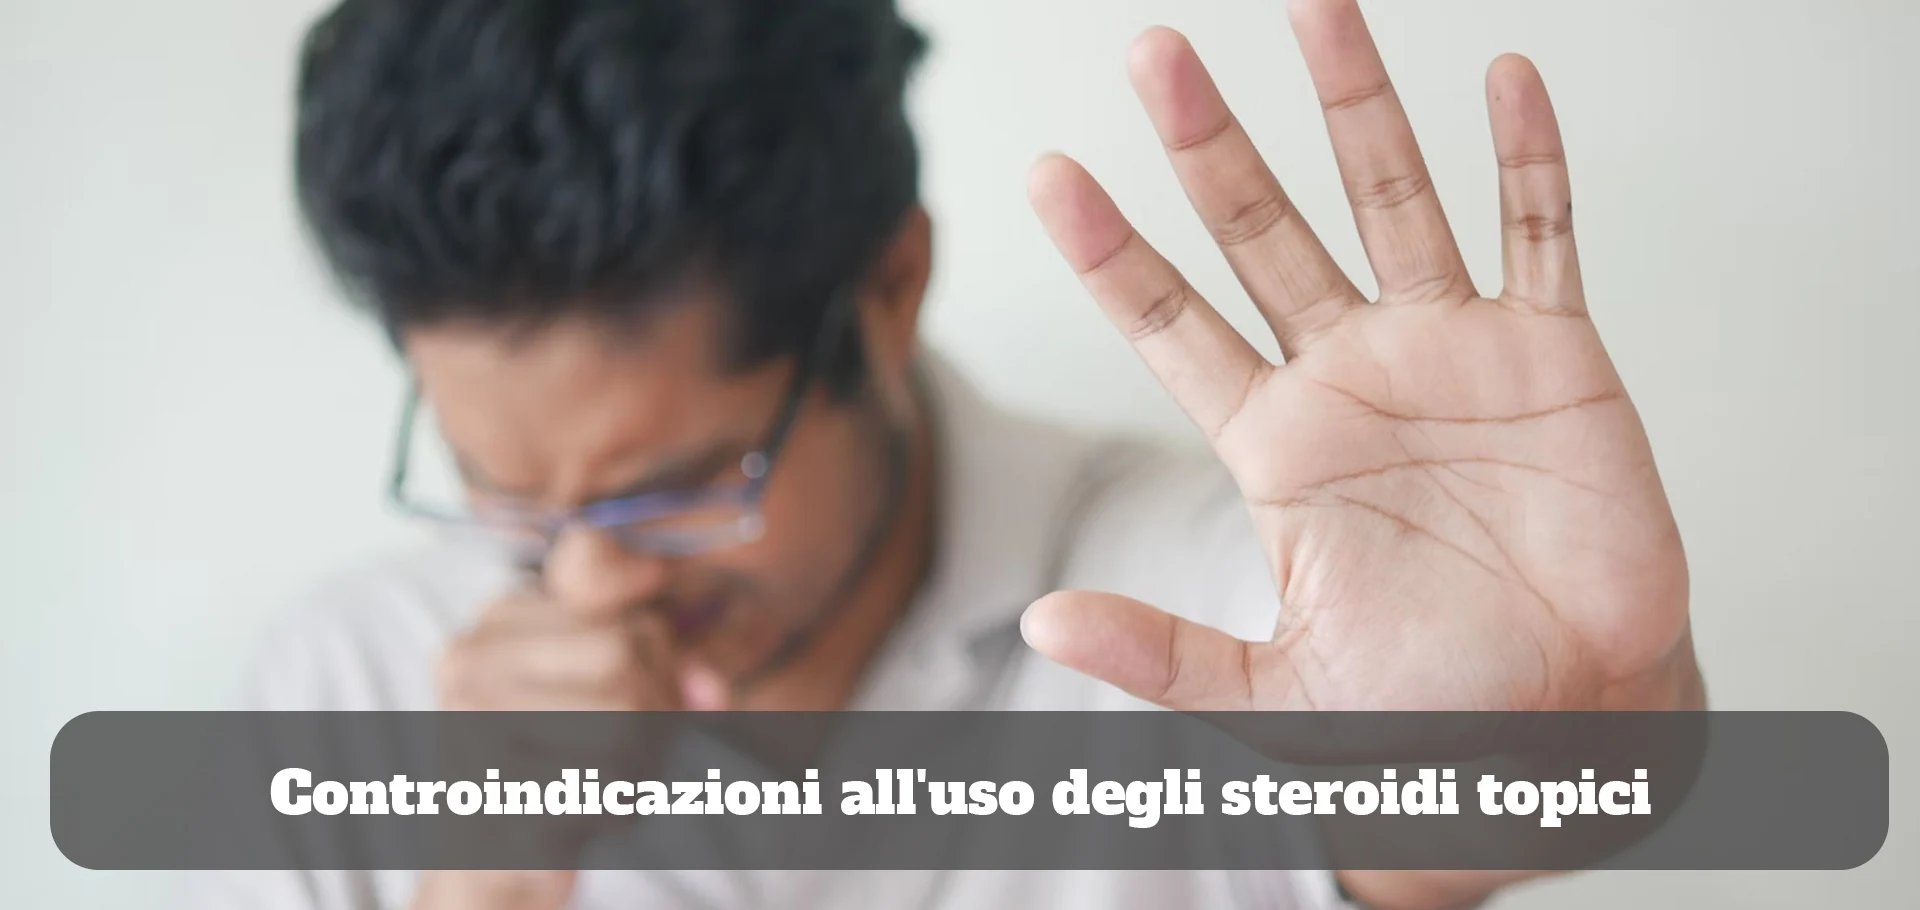 Controindicazioni all'uso degli steroidi topici